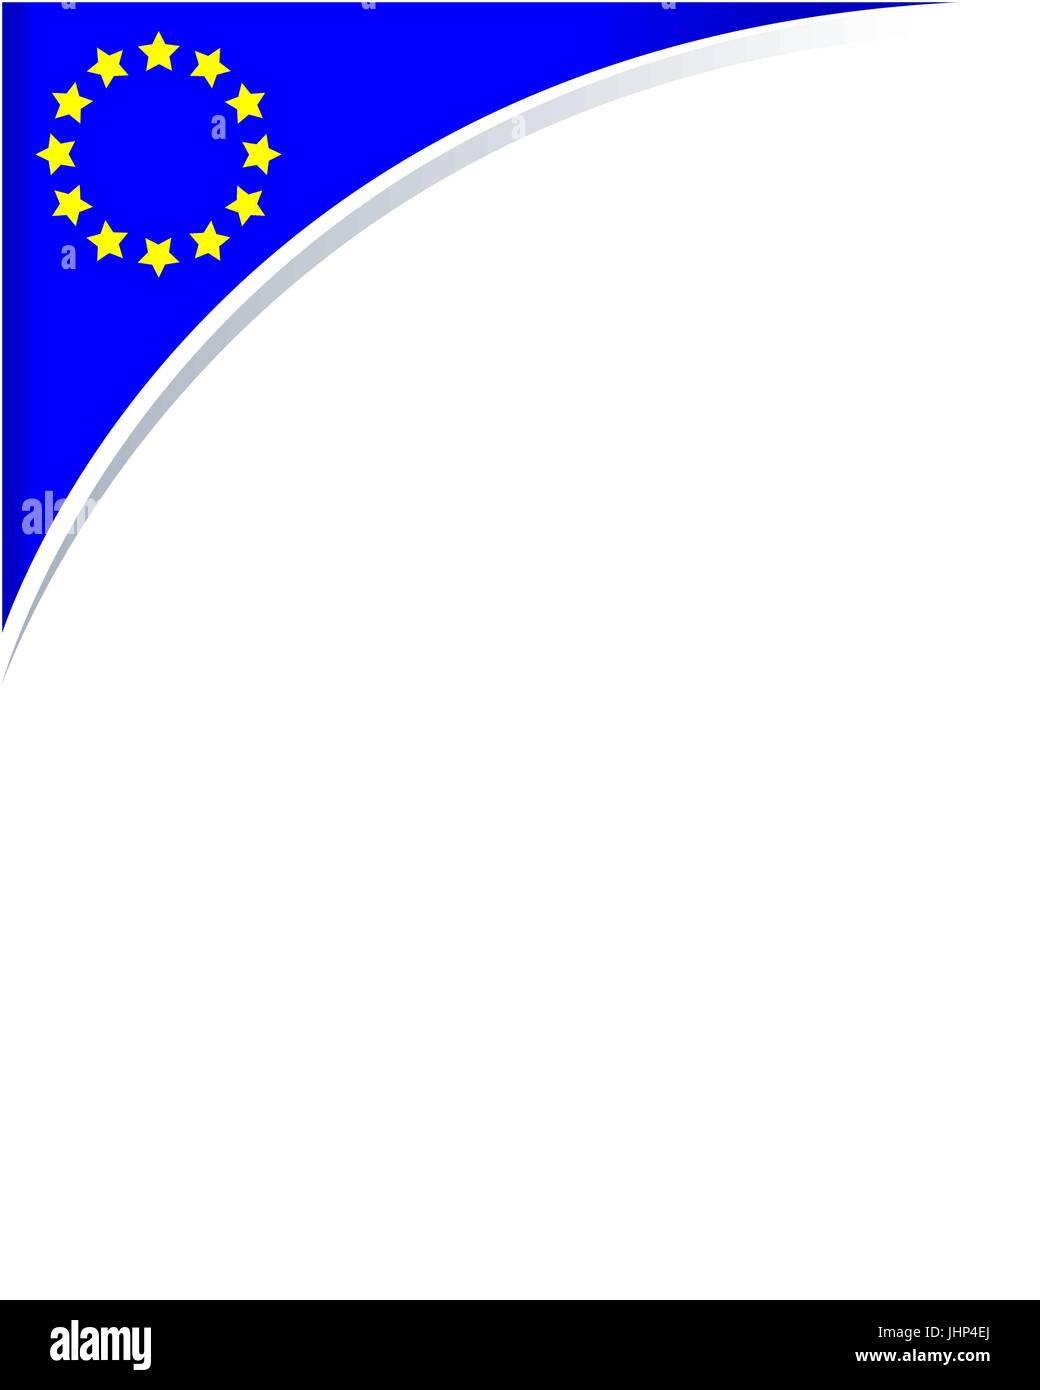 European Union flag frame corner Stock Vector